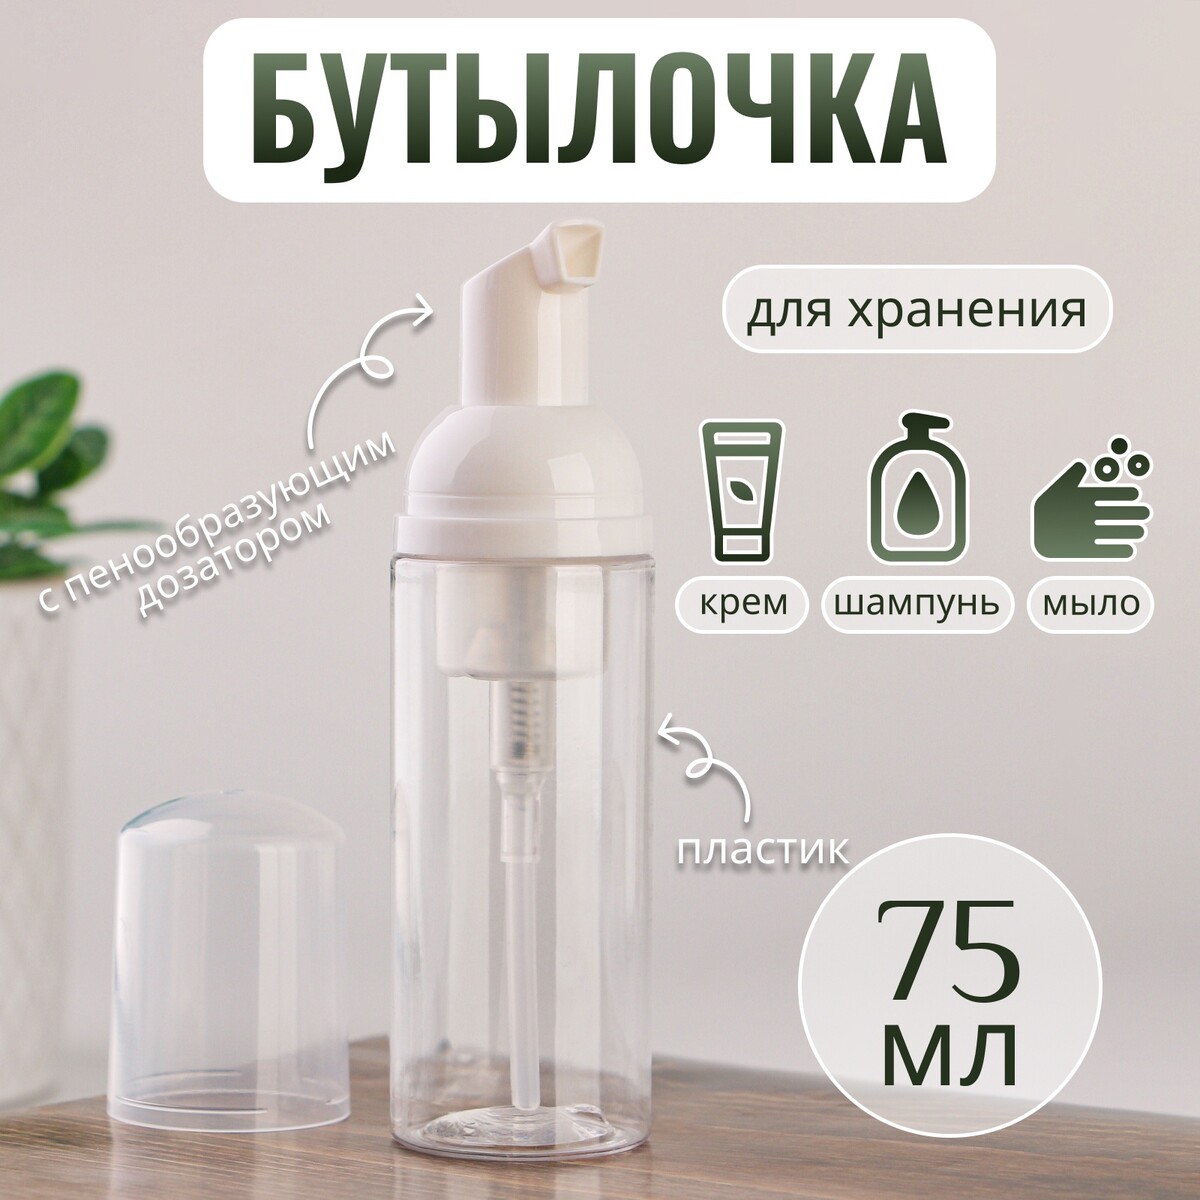 Бутылочка для хранения, с пенообразующим дозатором, 75 мл, цвет прозрачный/белый ONLITOP